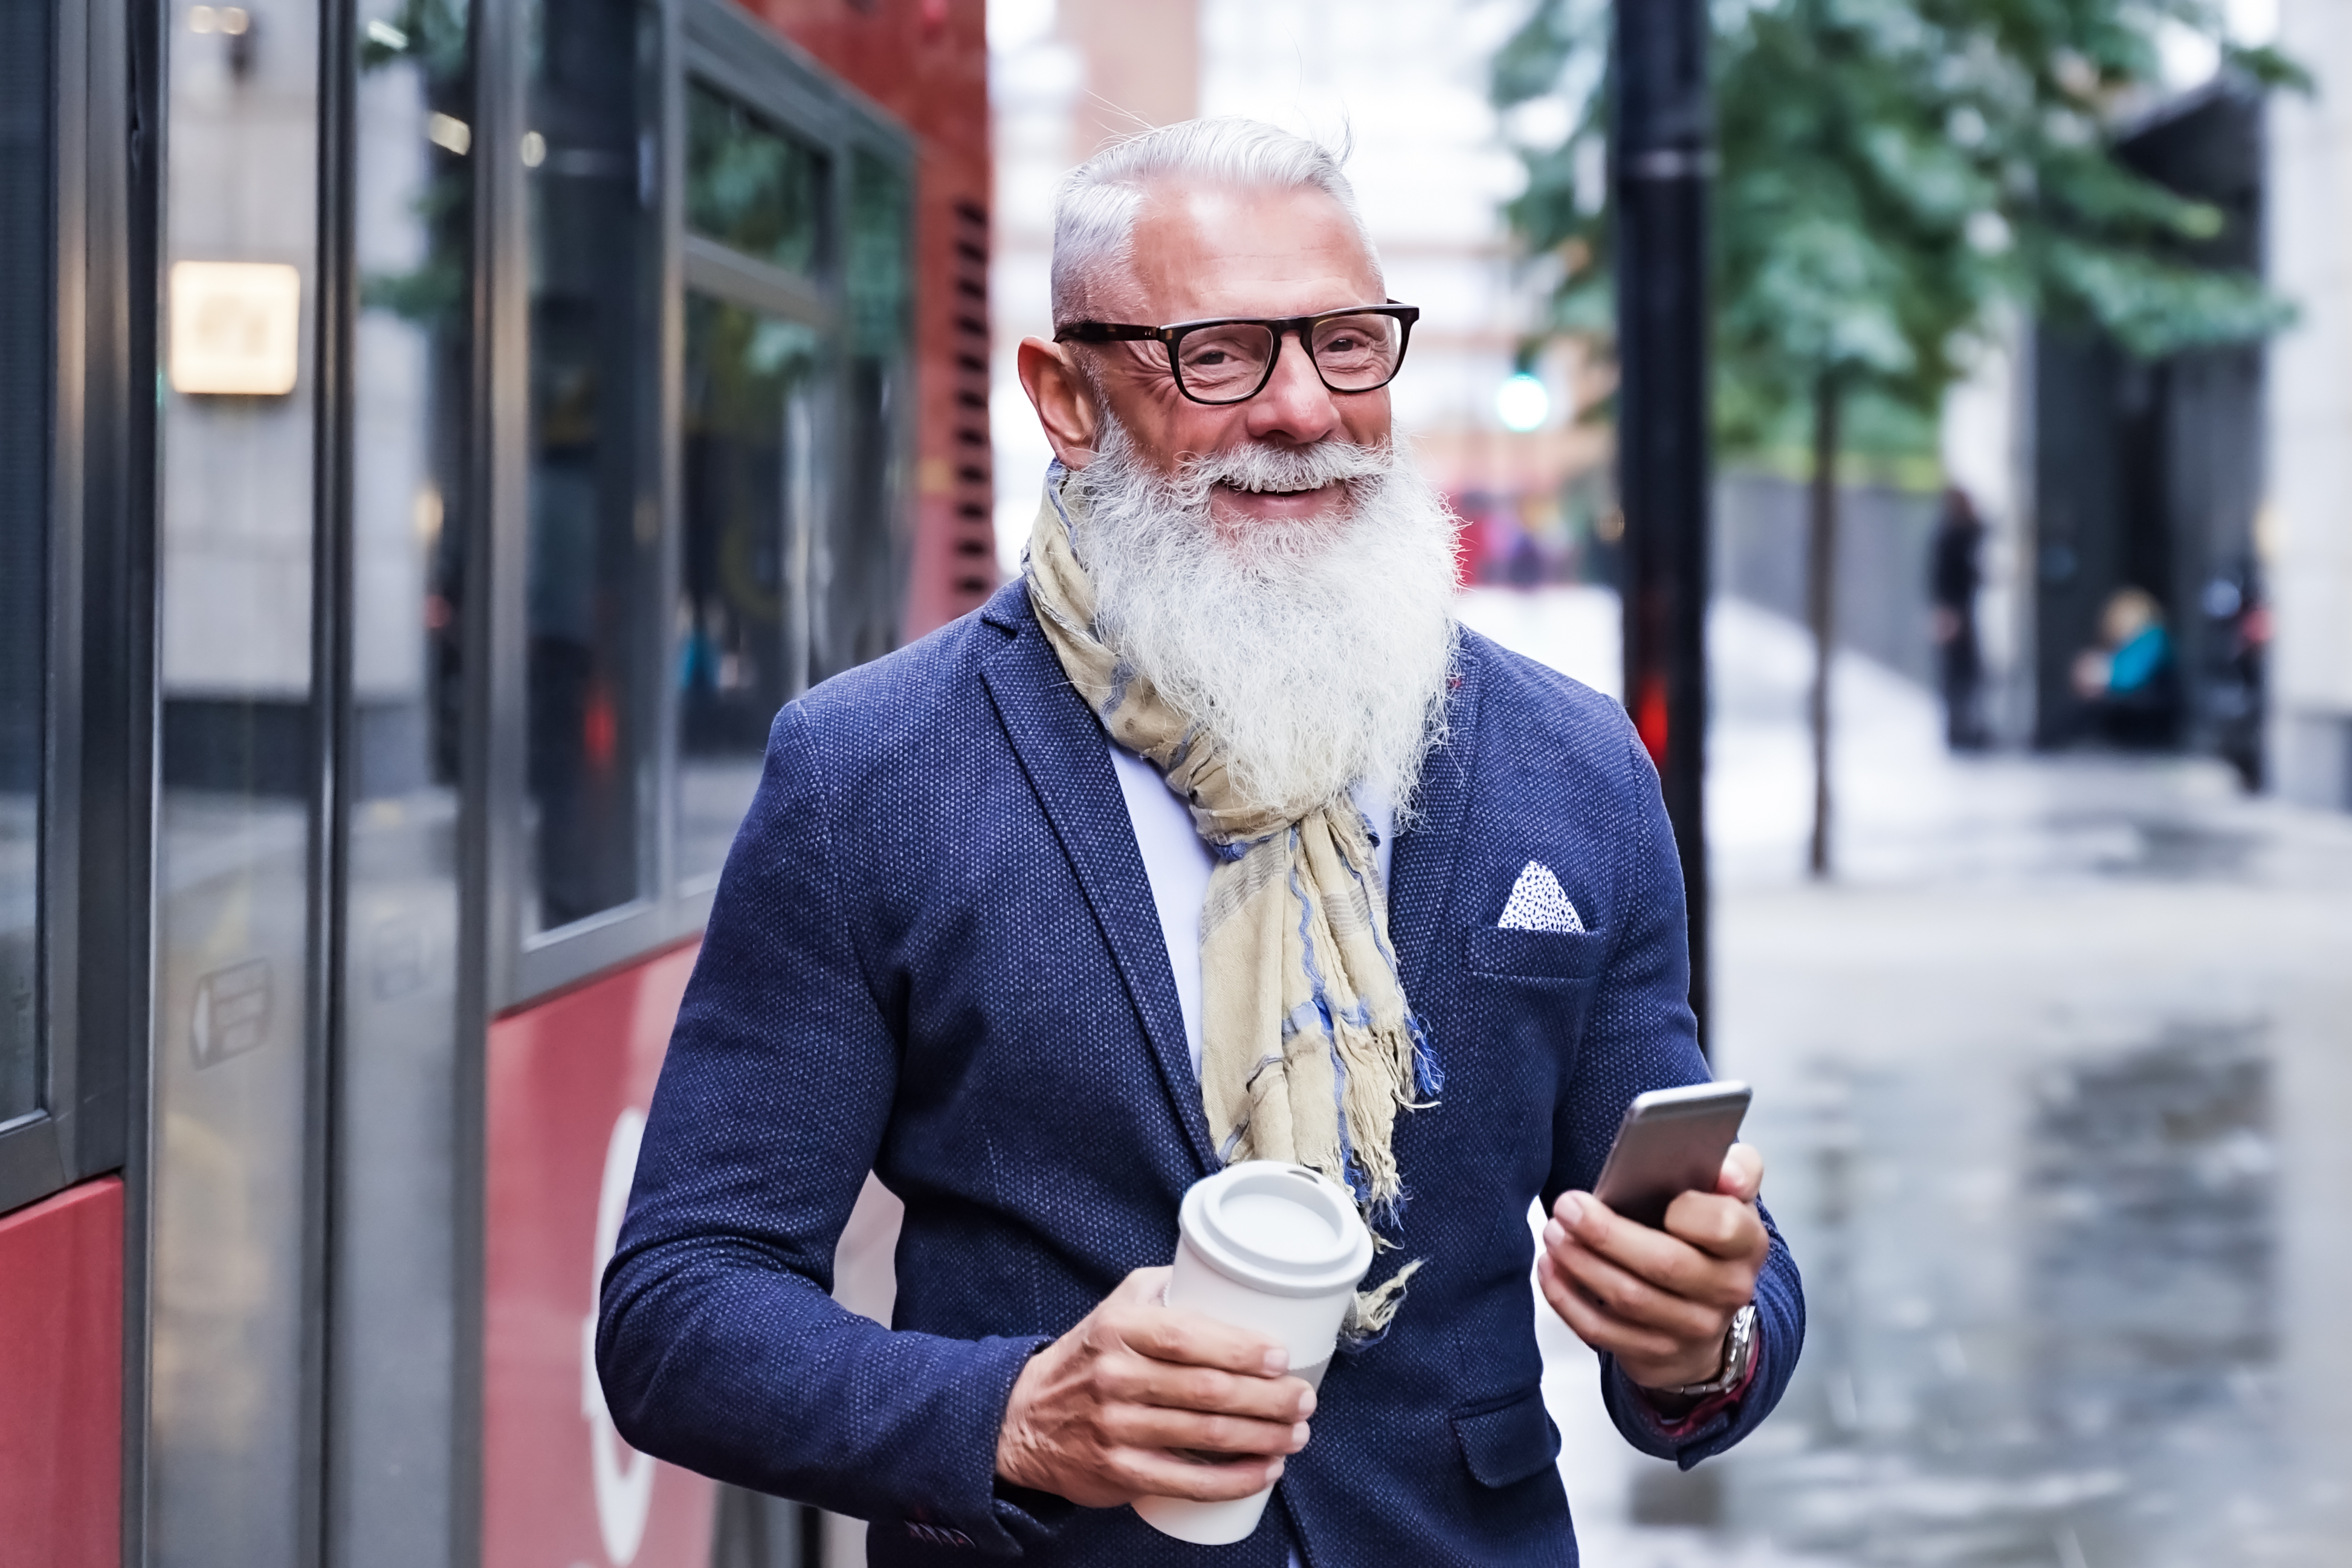 Ein älterer Mann, der auf einer Straße geht | Quelle: Shutterstock